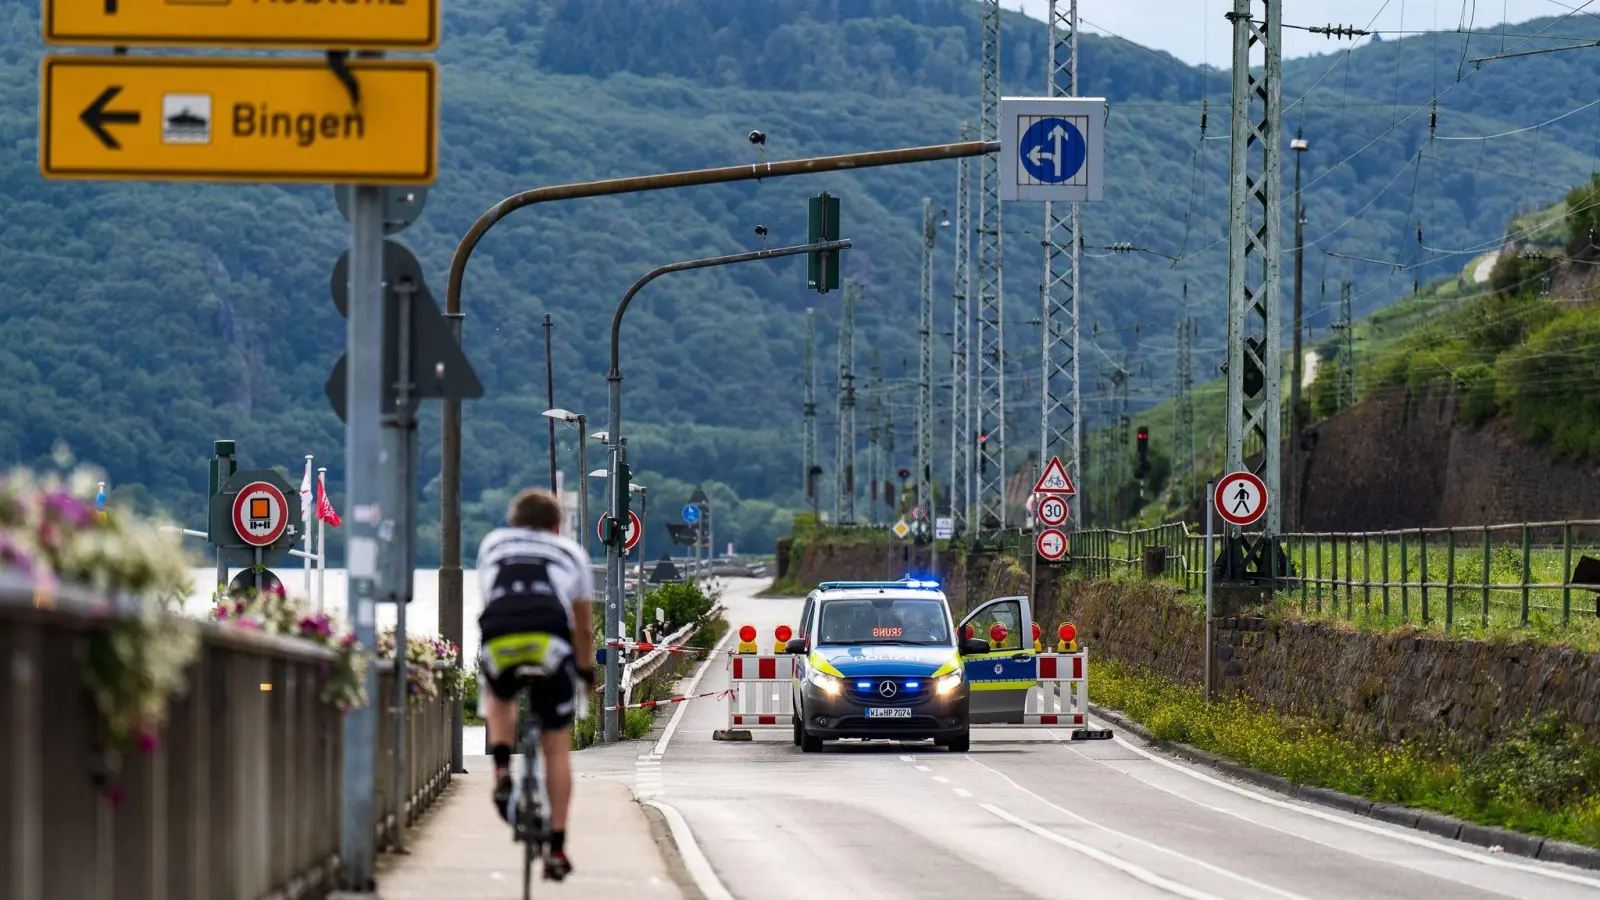 Nahe der Touristenhochburg Rüdesheim wurden vier Welkriegsbomben gefunden. Verkehrswege wurden deshalb gesperrt. (Foto: -/5VISION.NEWS /dpa)